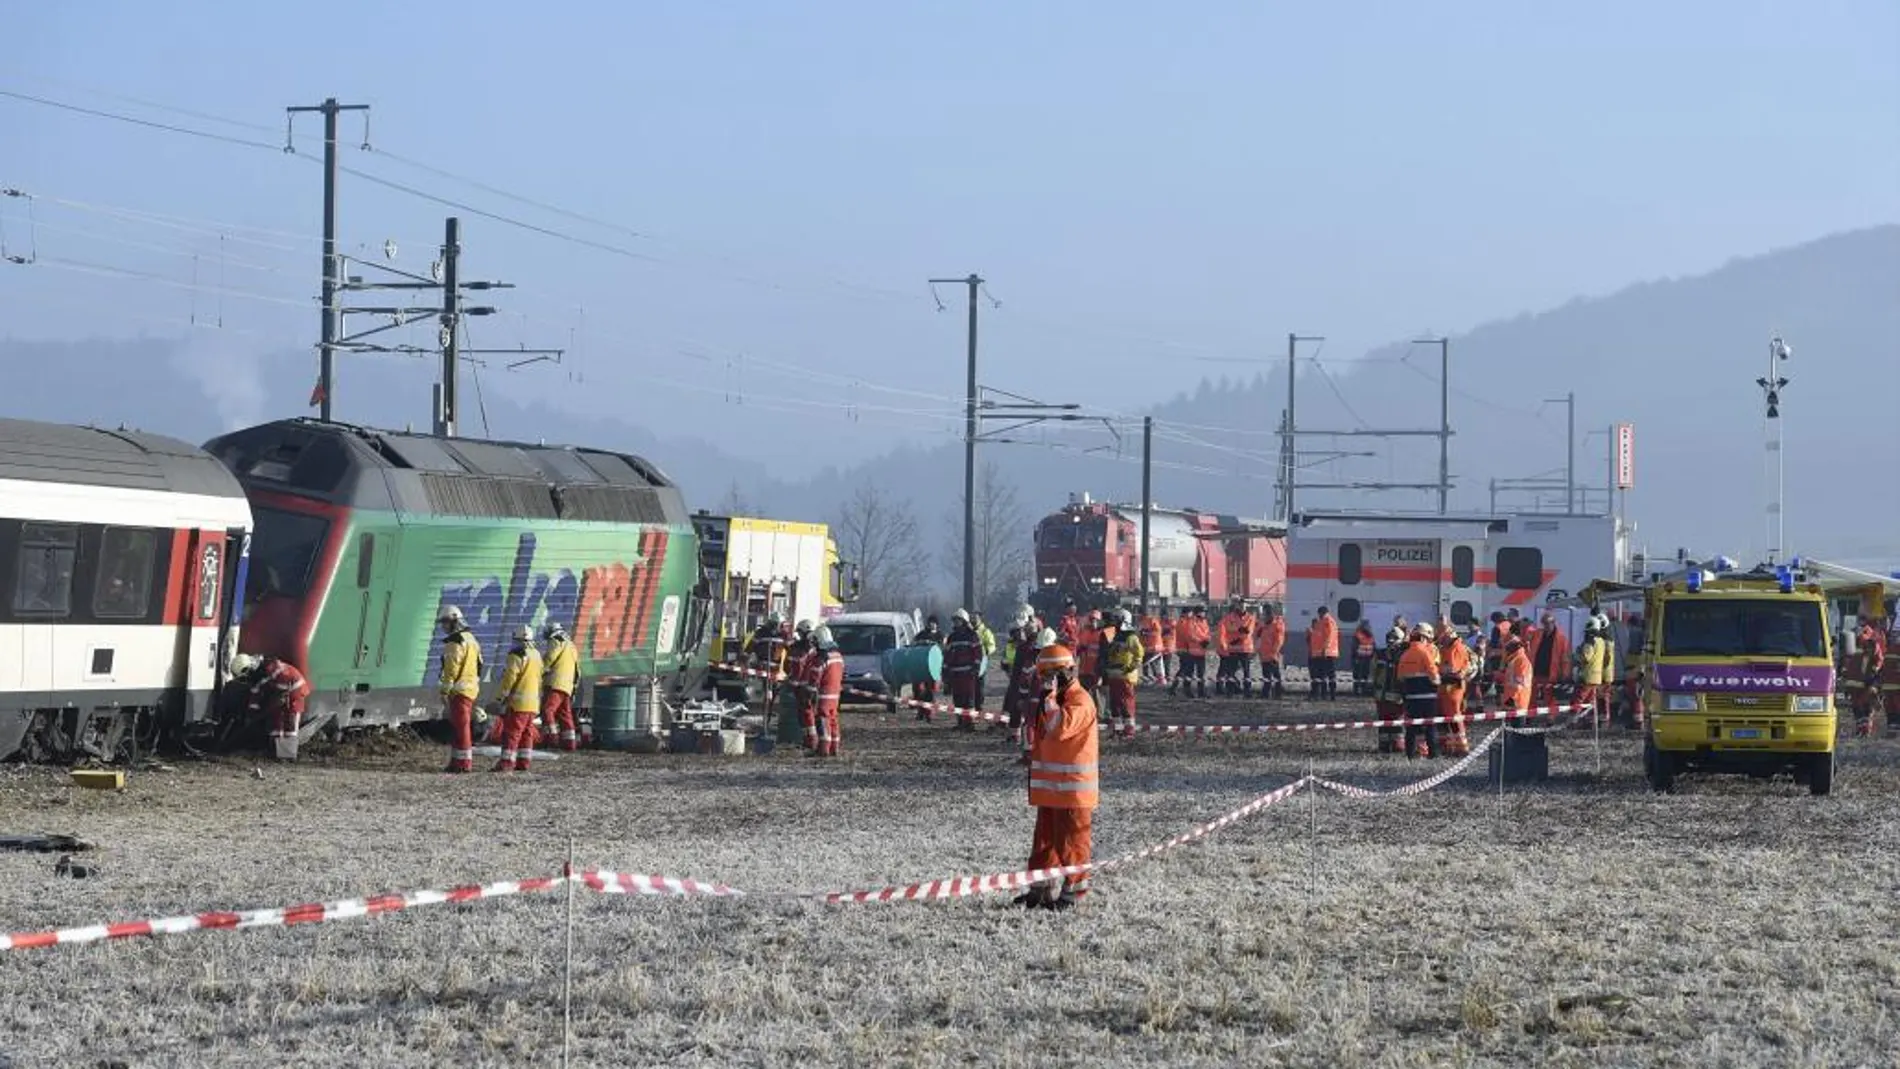 Trabajadores de los servicios de emergencia inspeccionan un tren tras un accidente en Rafz, en el cantón de Zúrich (Suiza).